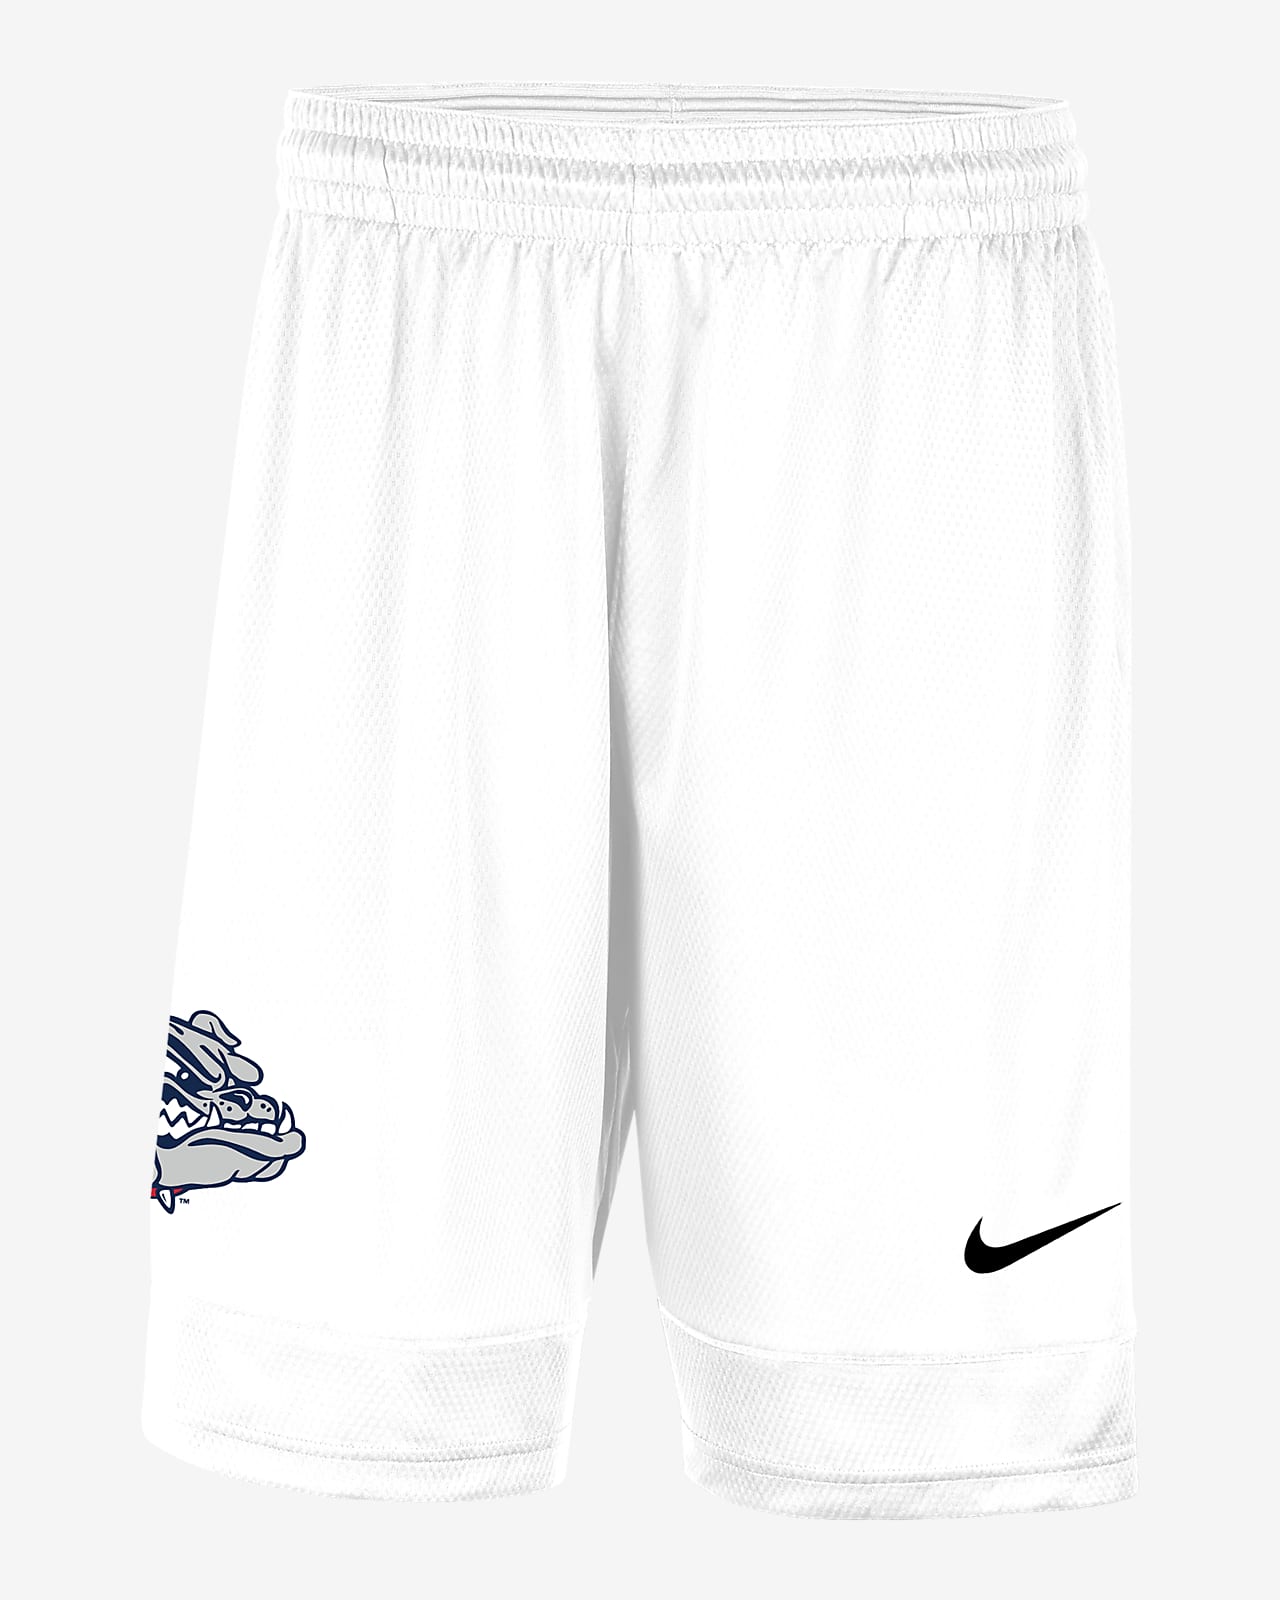 Gonzaga Men's Nike College Shorts